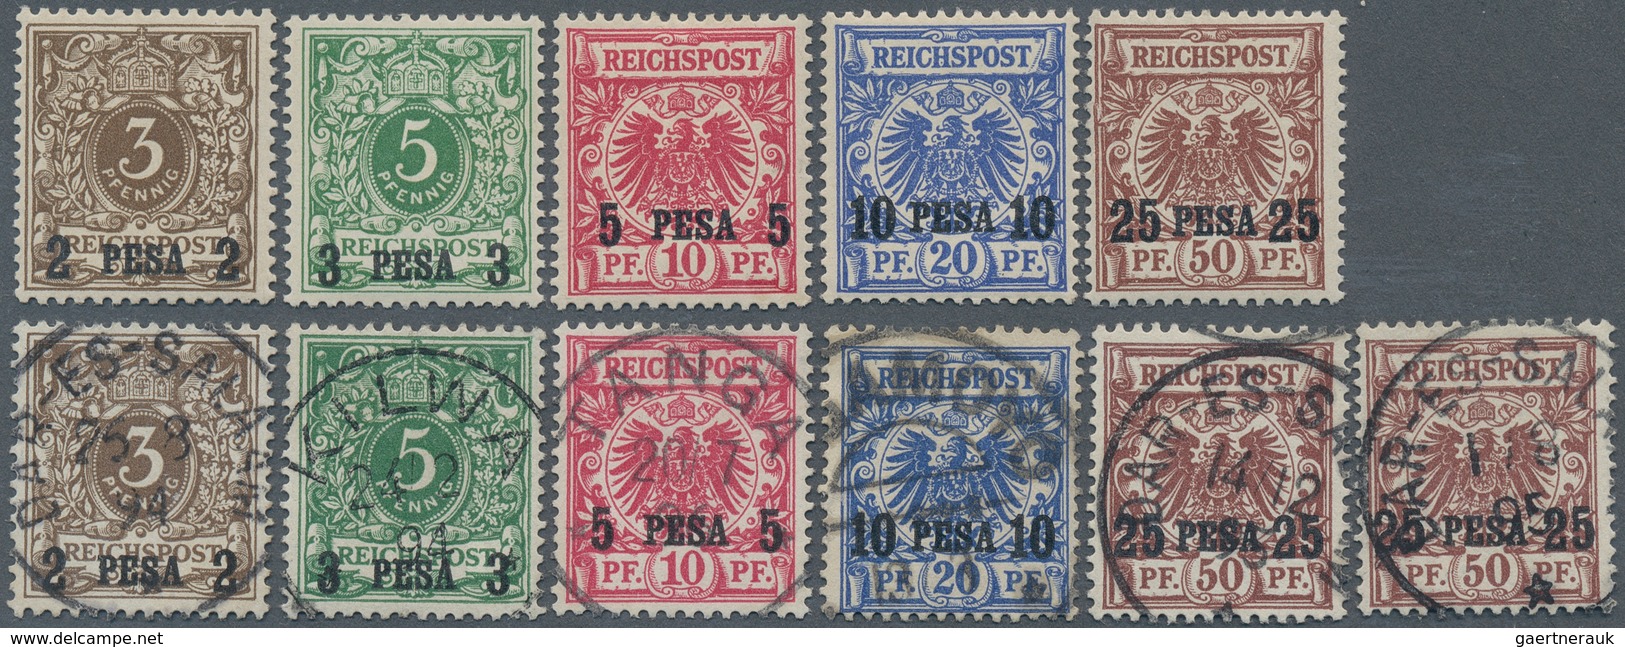 18581 Deutsch-Ostafrika: 1893, 3 P Bis 25 P. Auf Krone/Adler, Fünf Aufdruckwerte Ungebraucht Mit Falzspur, - German East Africa